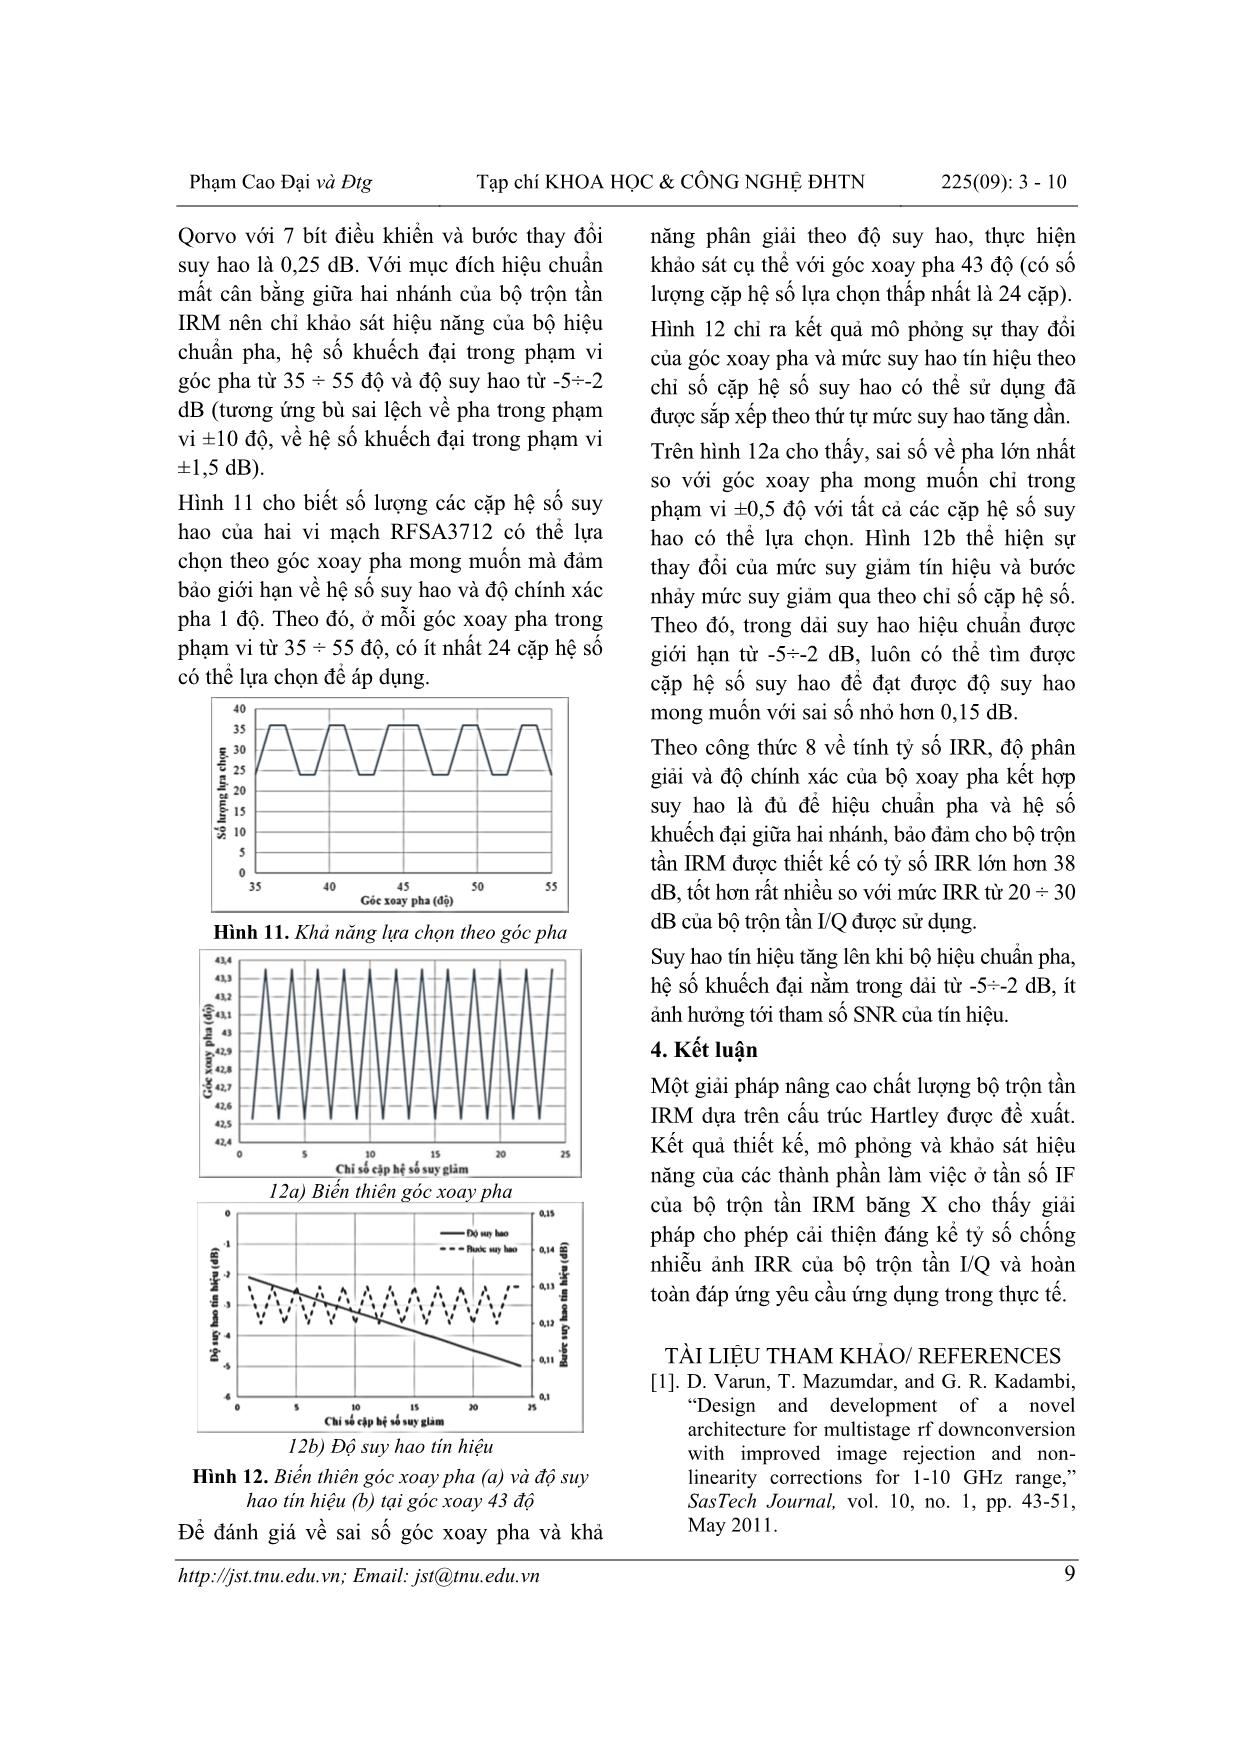 Thiết kế bộ trộn tần chống nhiễu ảnh ứng dụng cho mô-đun thu phát băng tần X trang 7